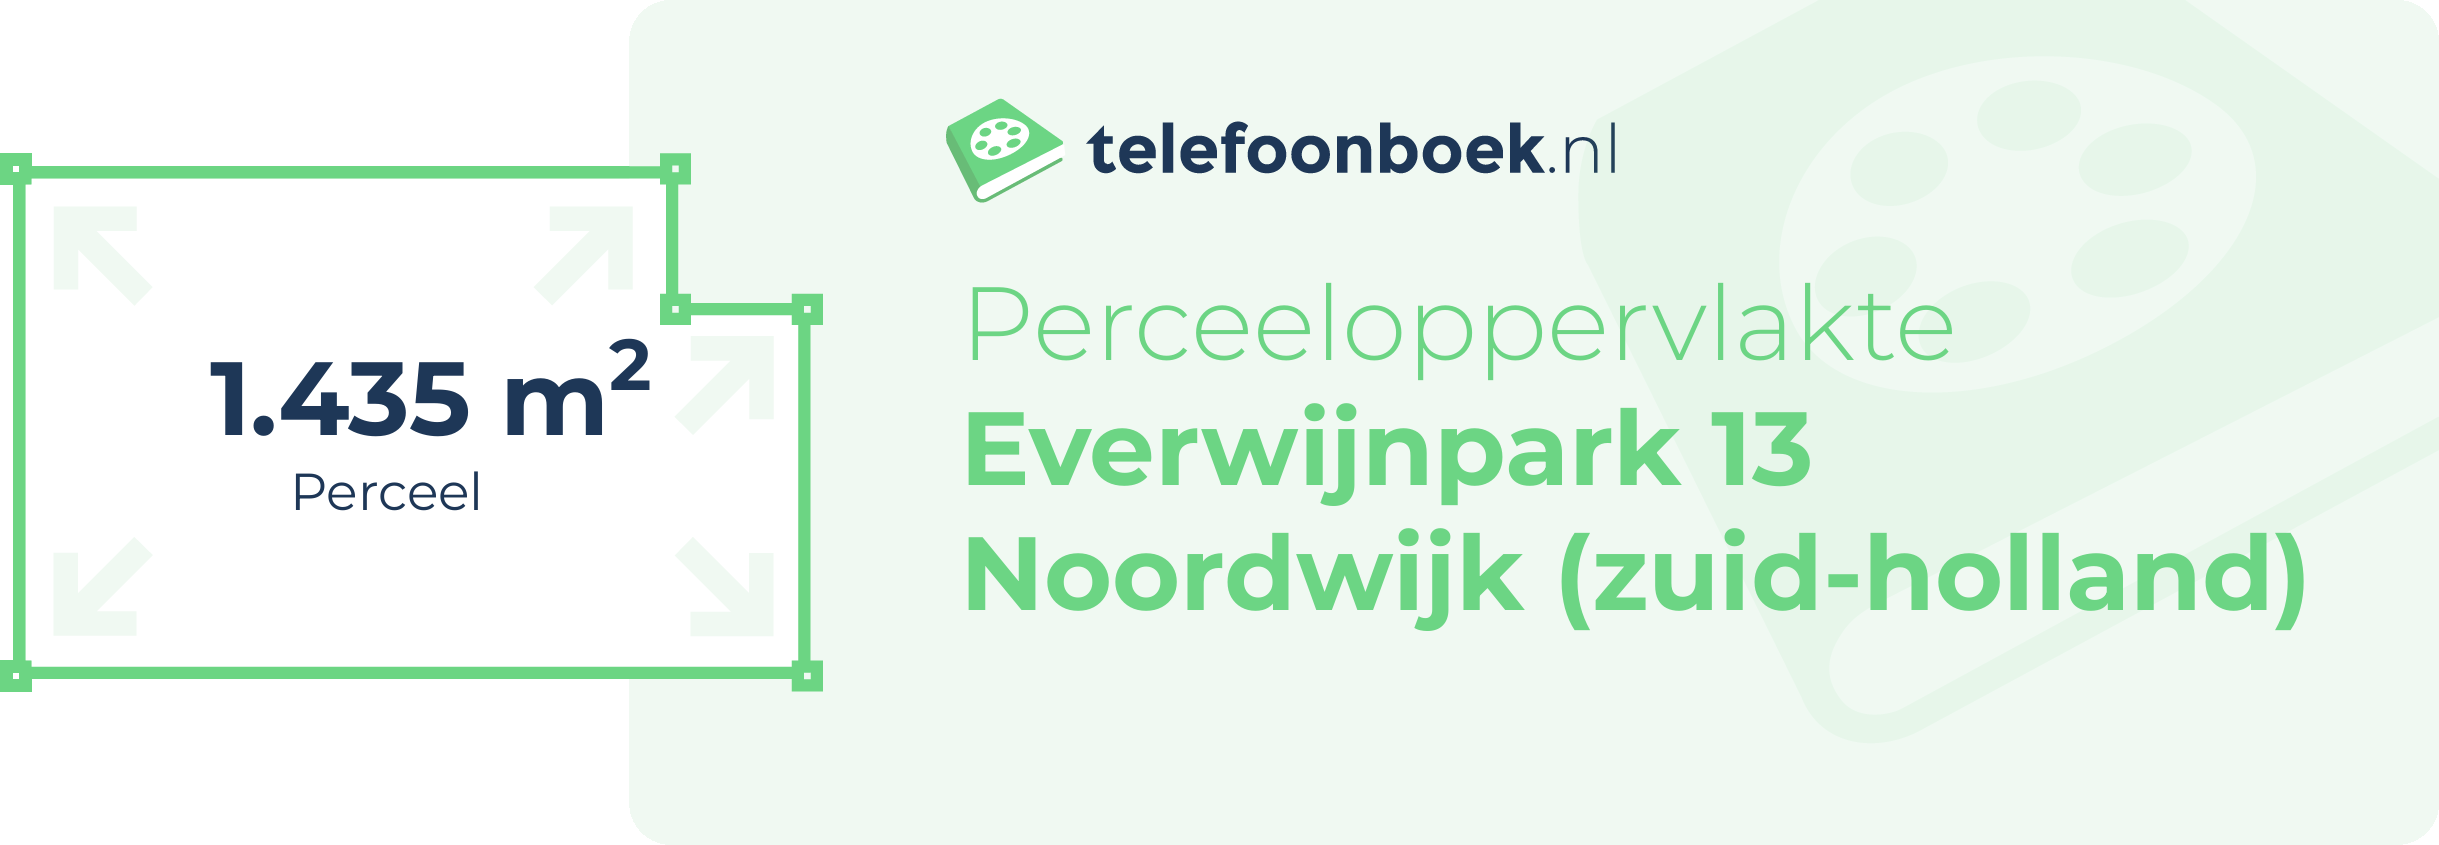 Perceeloppervlakte Everwijnpark 13 Noordwijk (Zuid-Holland)